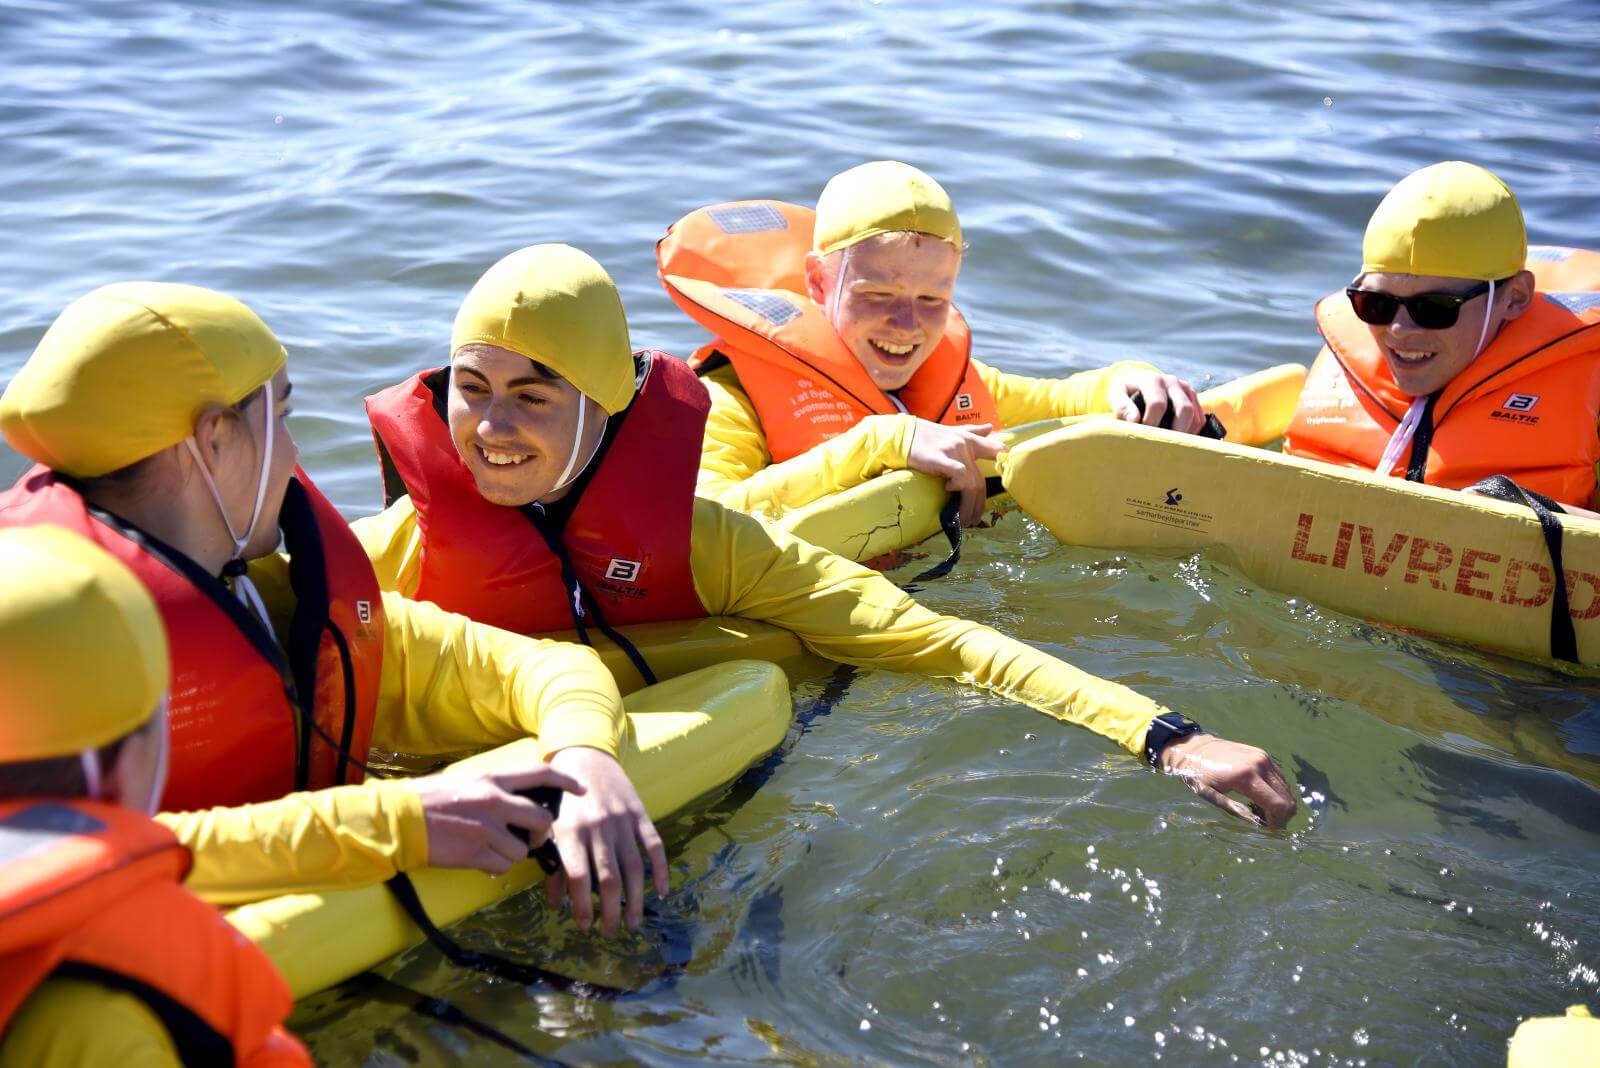 Fem børn flyder i vandet med stort smil og på et gult bræt, hvor der står livredder. De er alle iført våddragter, redningsveste og gule badehætter